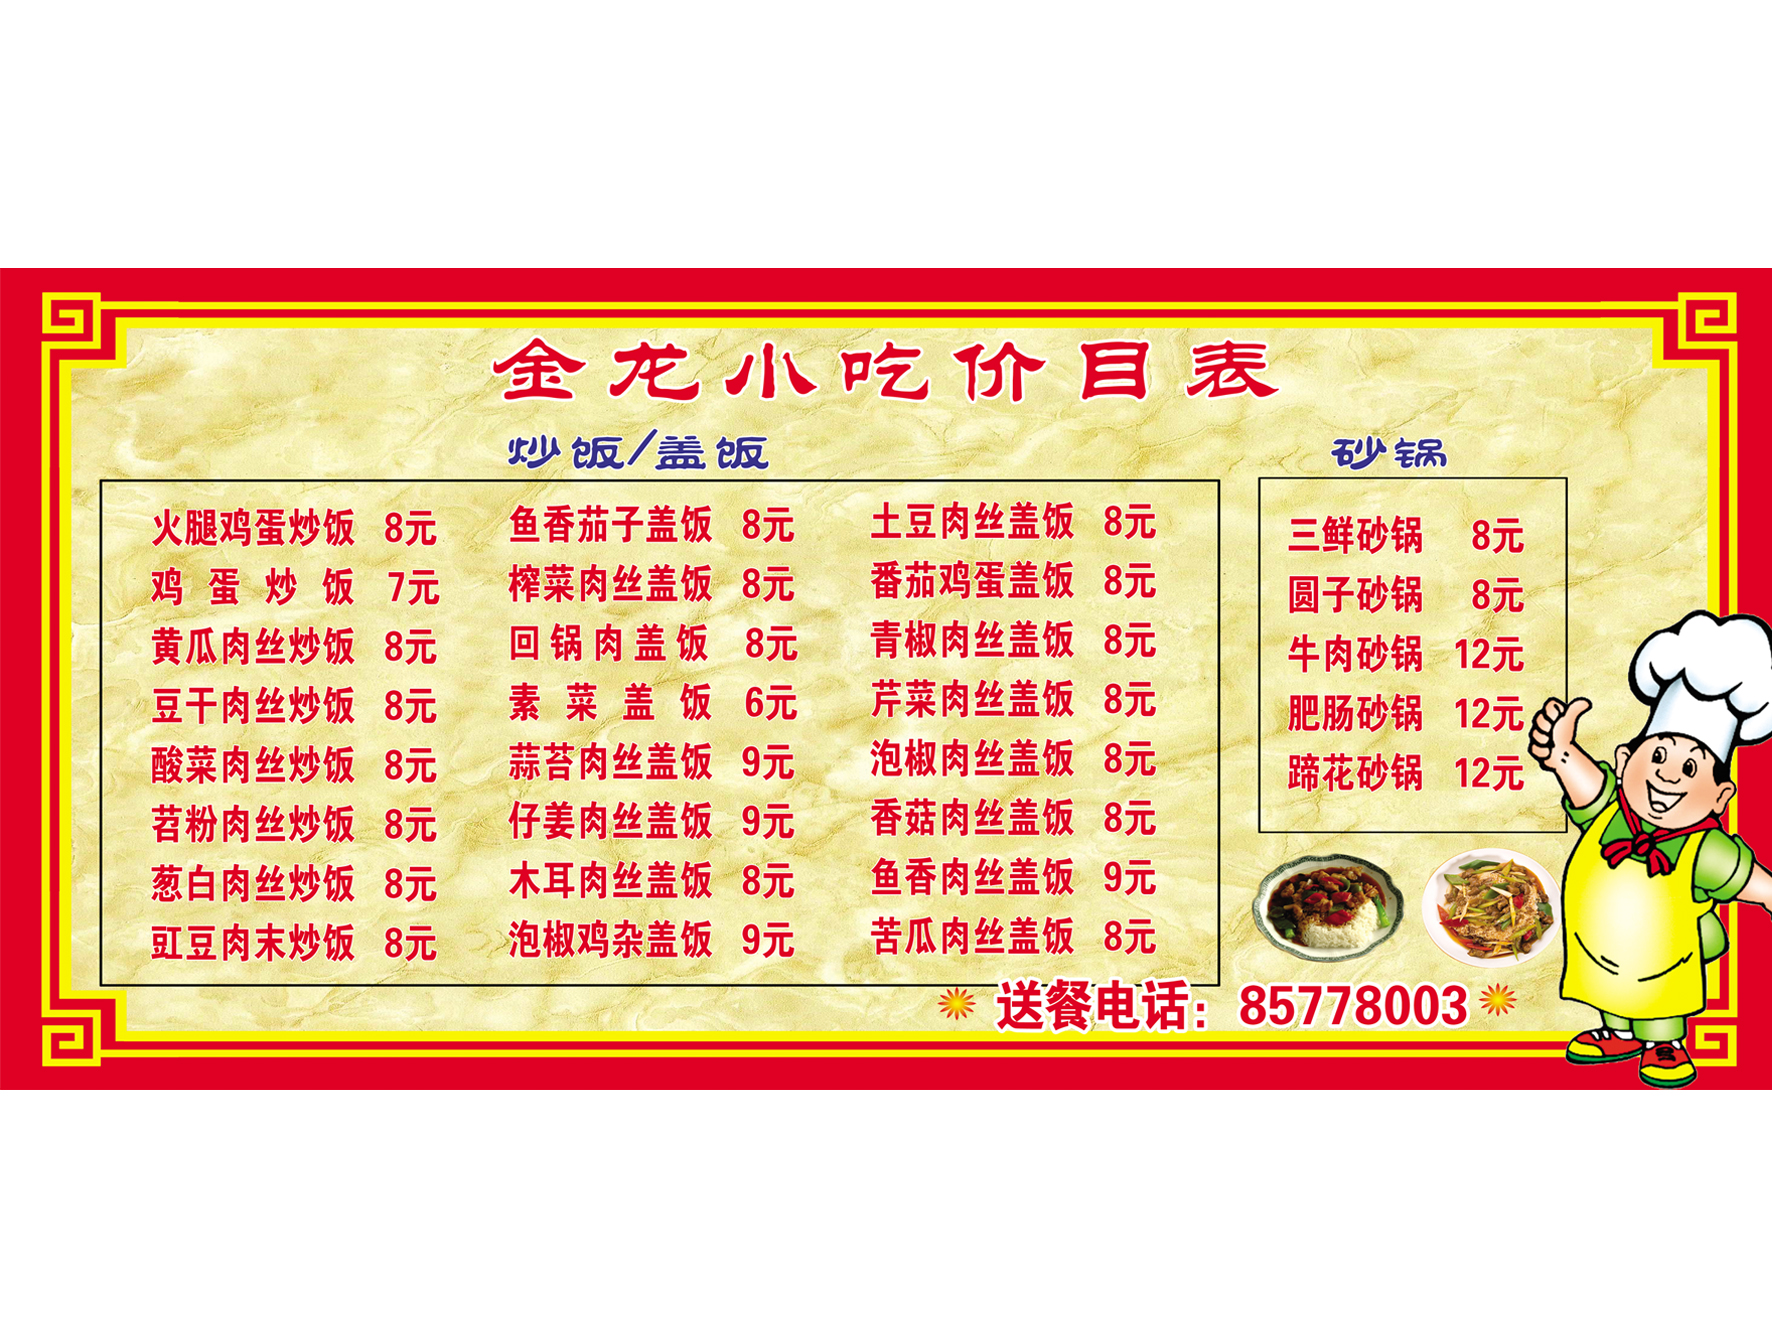 砂锅价格表素材图片下载-素材编号00710438-素材天下图库